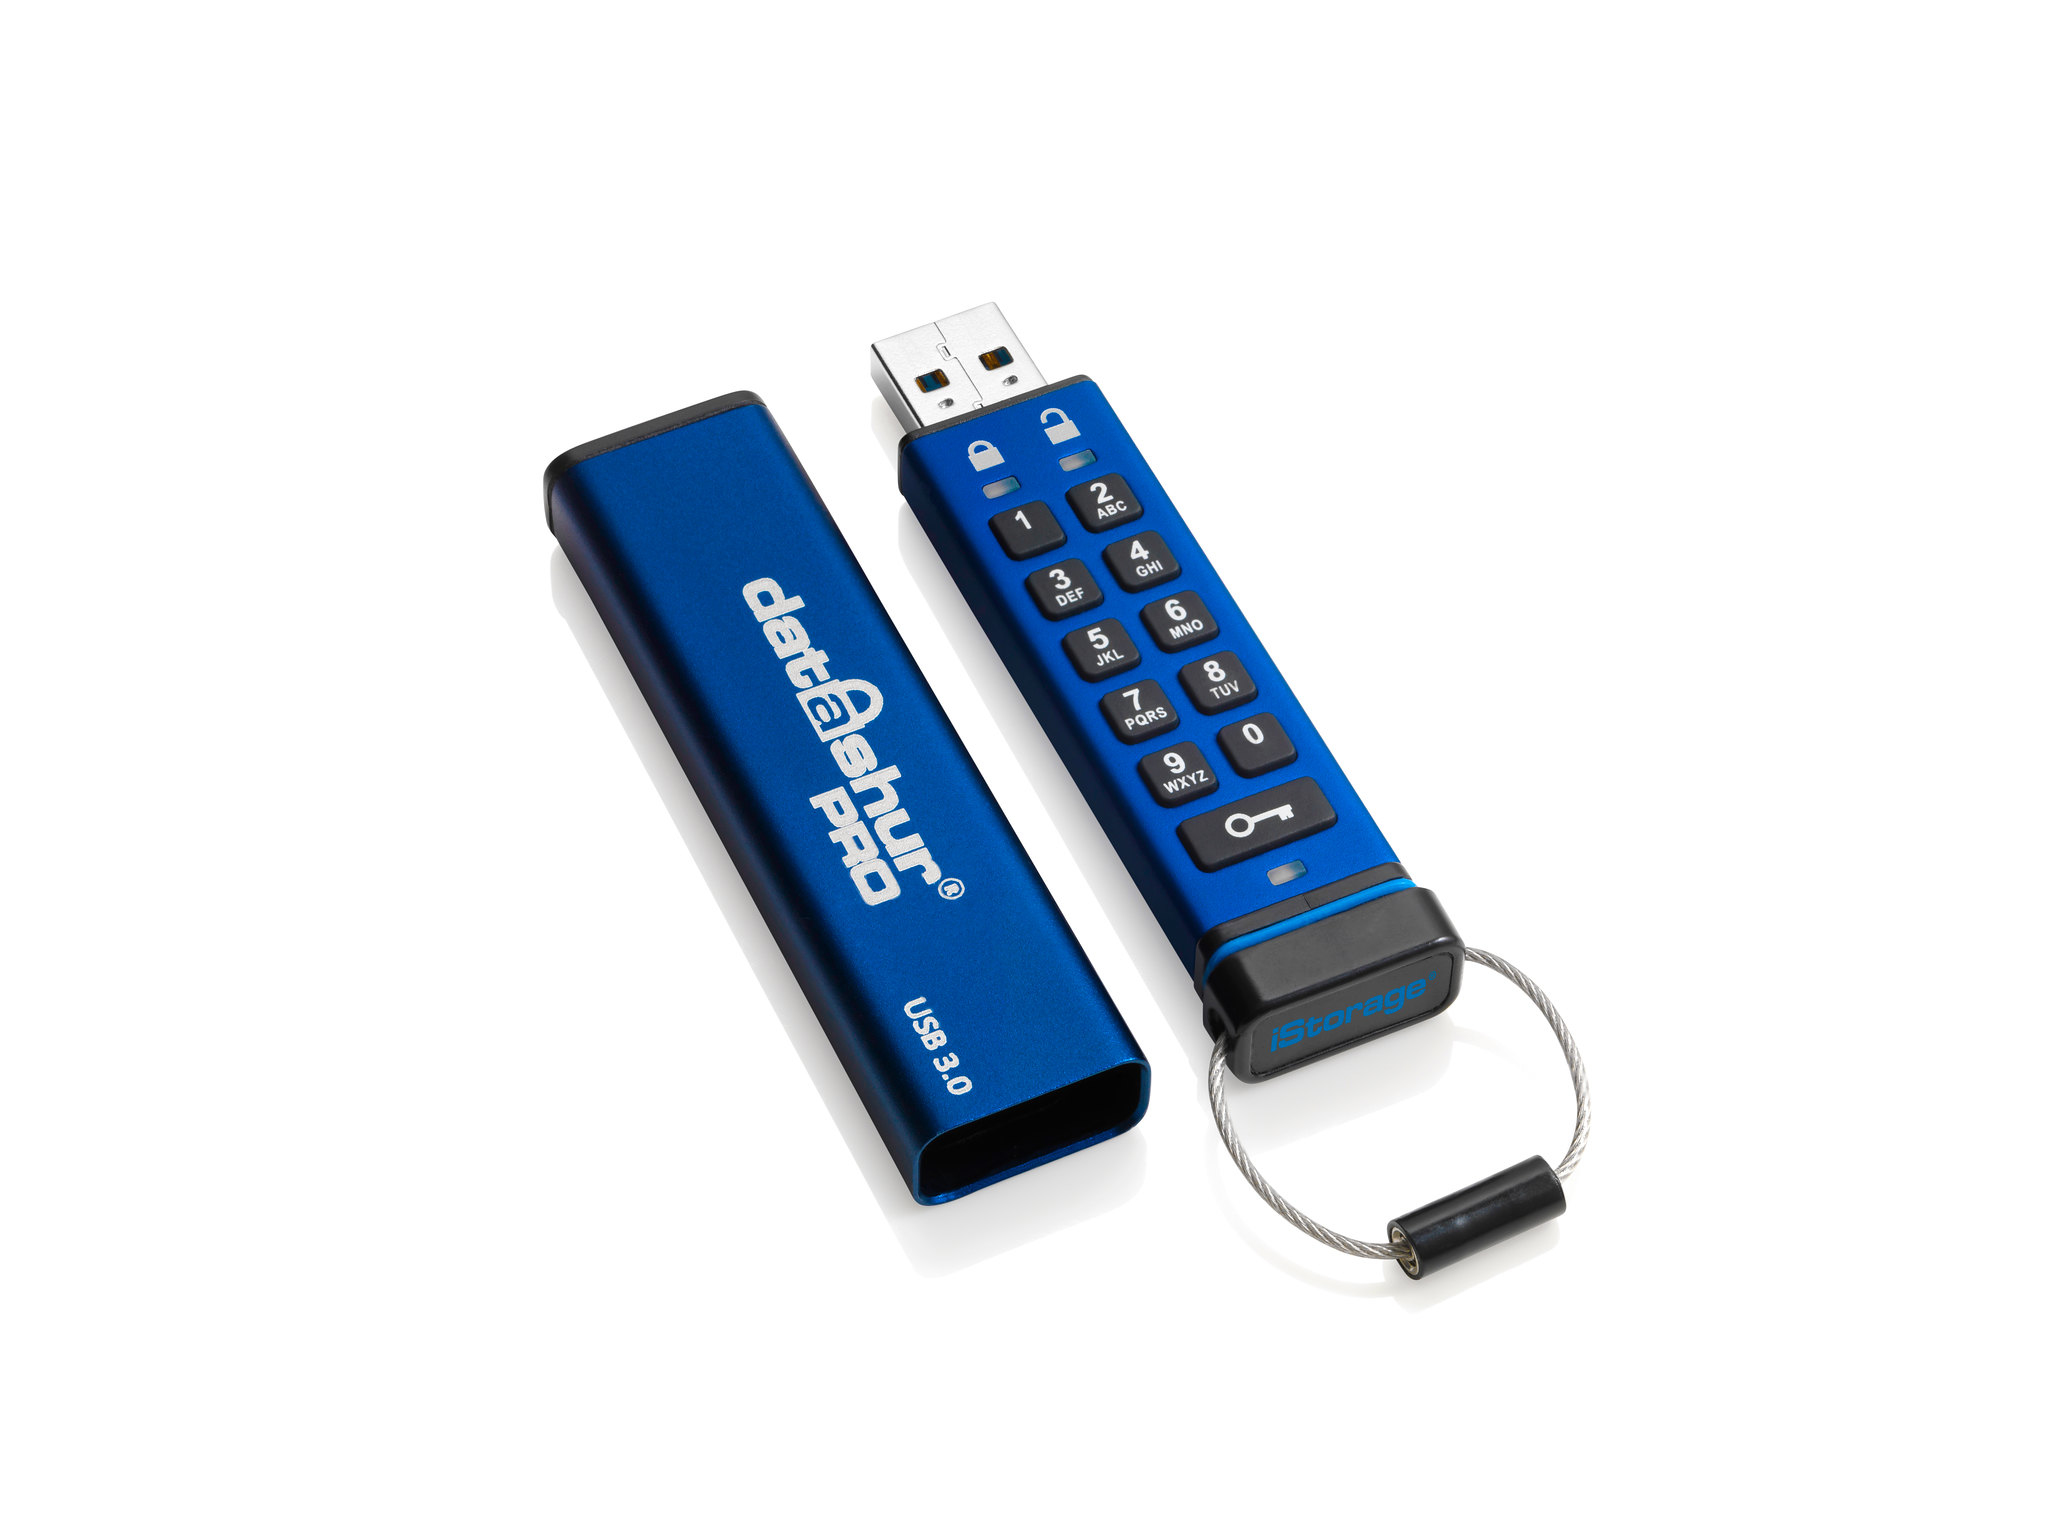 iStorage datAshur Pro - USB-Flash-Laufwerk - verschlüsselt